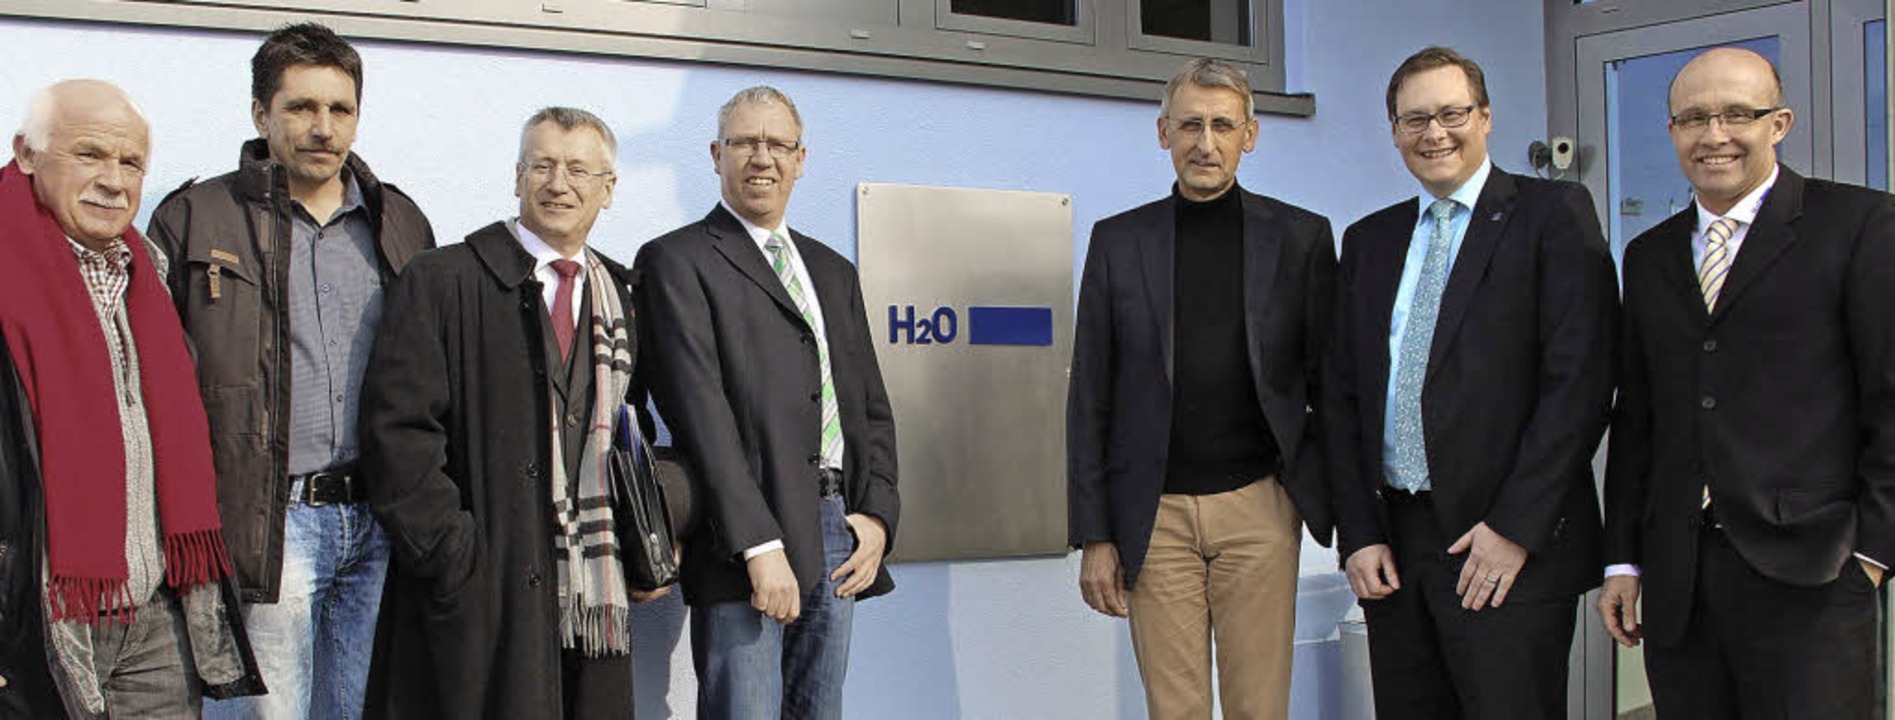 Armin Schuster zu Besuch bei  H2O in S...hias Fickenscher und Frank Schlegel .   | Foto: Privat